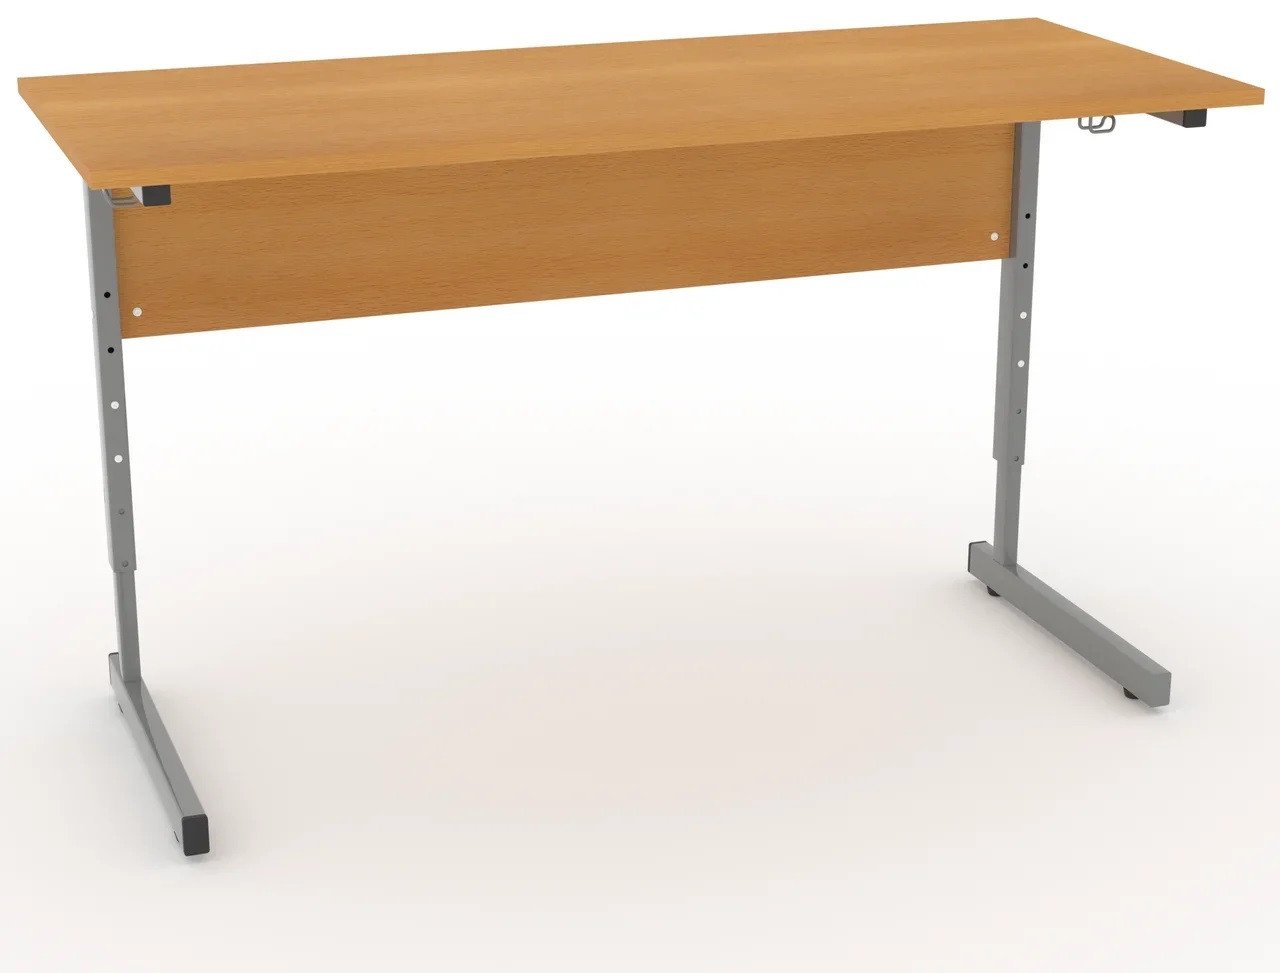 стол ученический модульный регулируемый по высоте для школьника